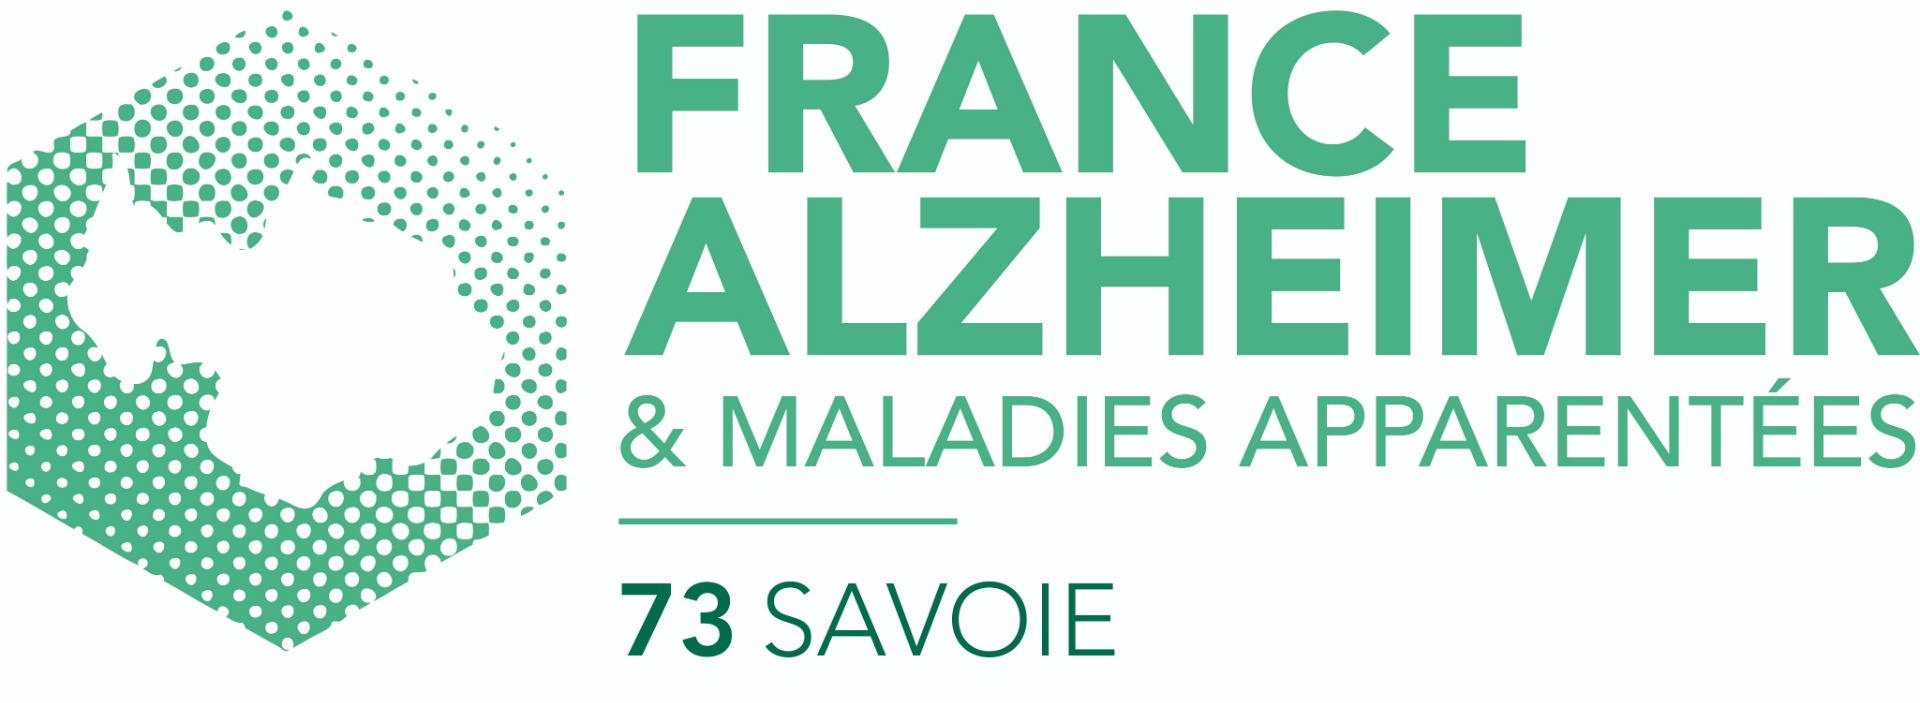 Photo de France Alzheimer Savoie à CHAMBERY